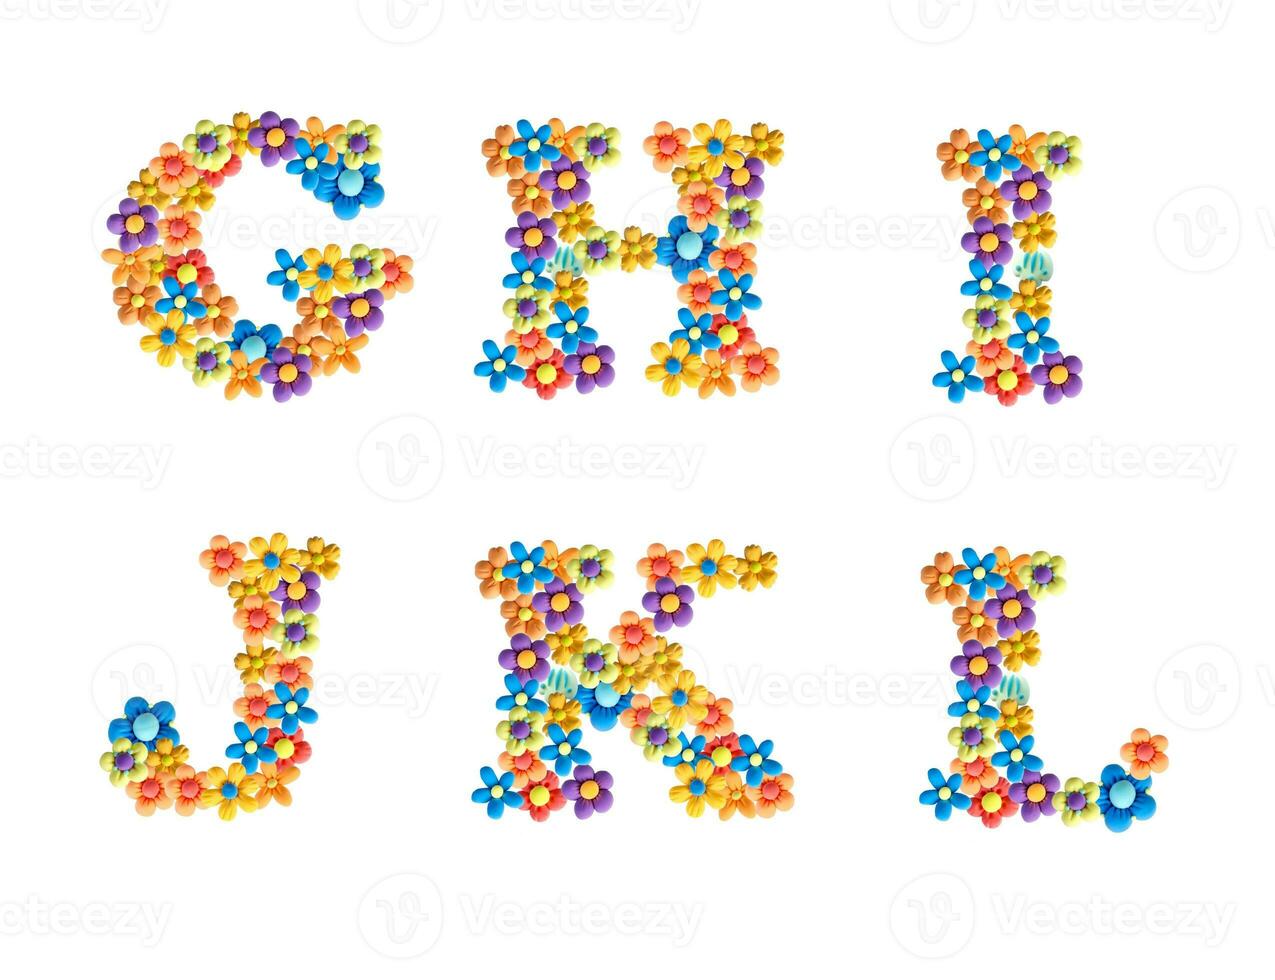 3d alphabet, Fait main pâte à modeler des lettres. unique conception de des lettres pour décoration. des lettres fabriqué de brillant tridimensionnel fleurs ghijkl photo